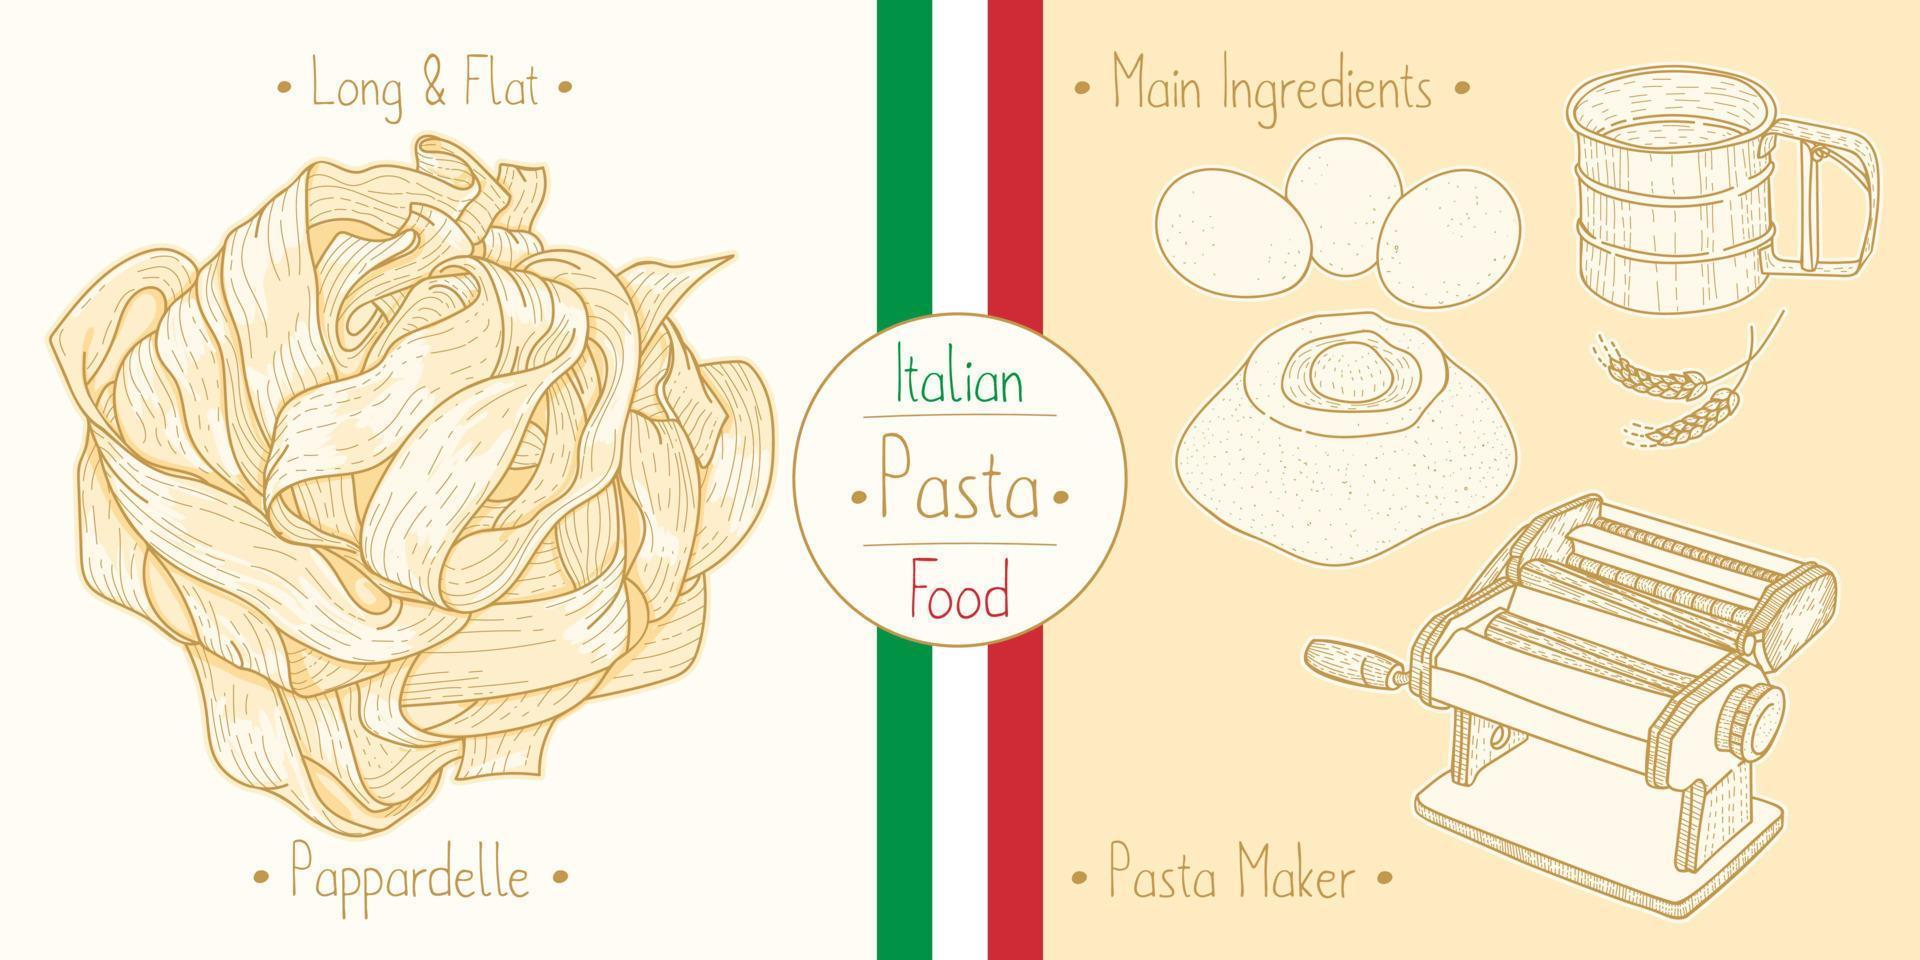 cocinar comida italiana pasta pappardelle e ingredientes principales y equipos para hacer pasta, dibujar ilustraciones en estilo antiguo vector